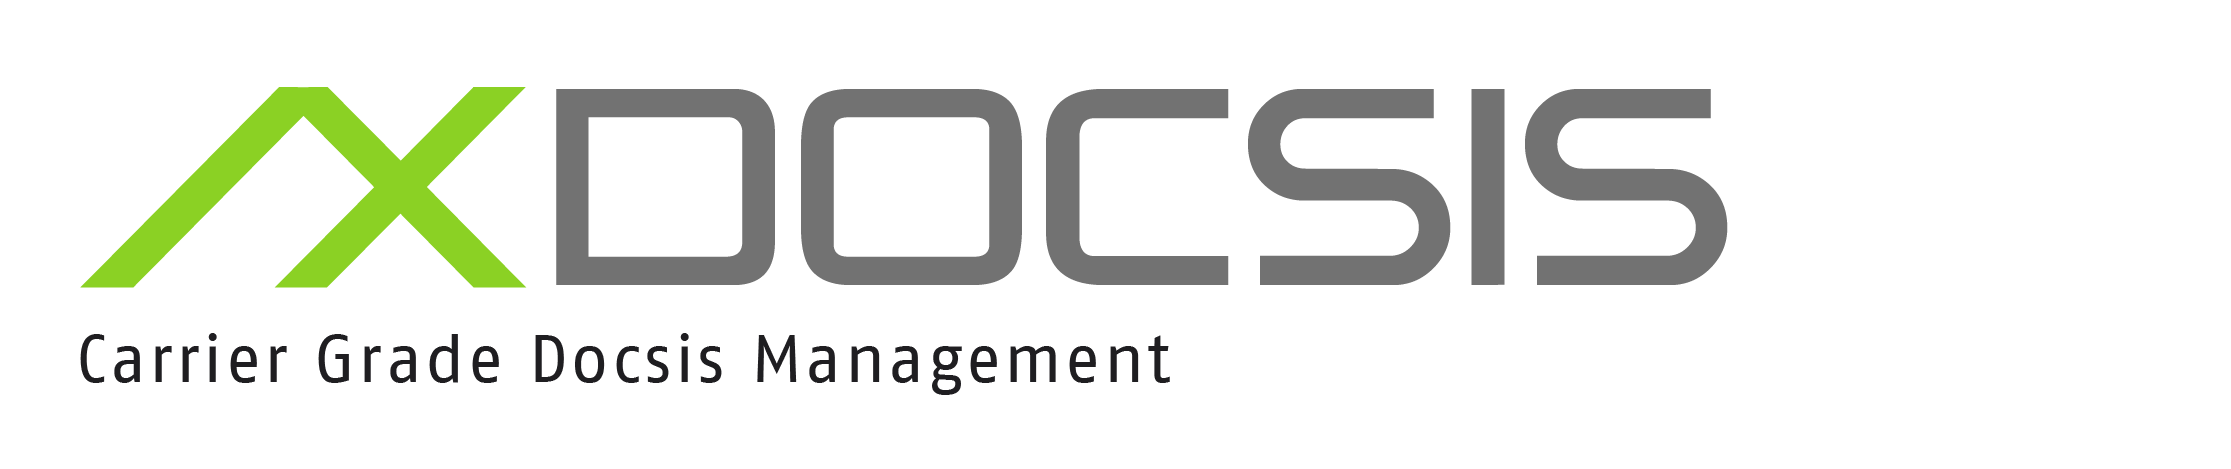 Axiros AX DOCSIS製品ロゴ